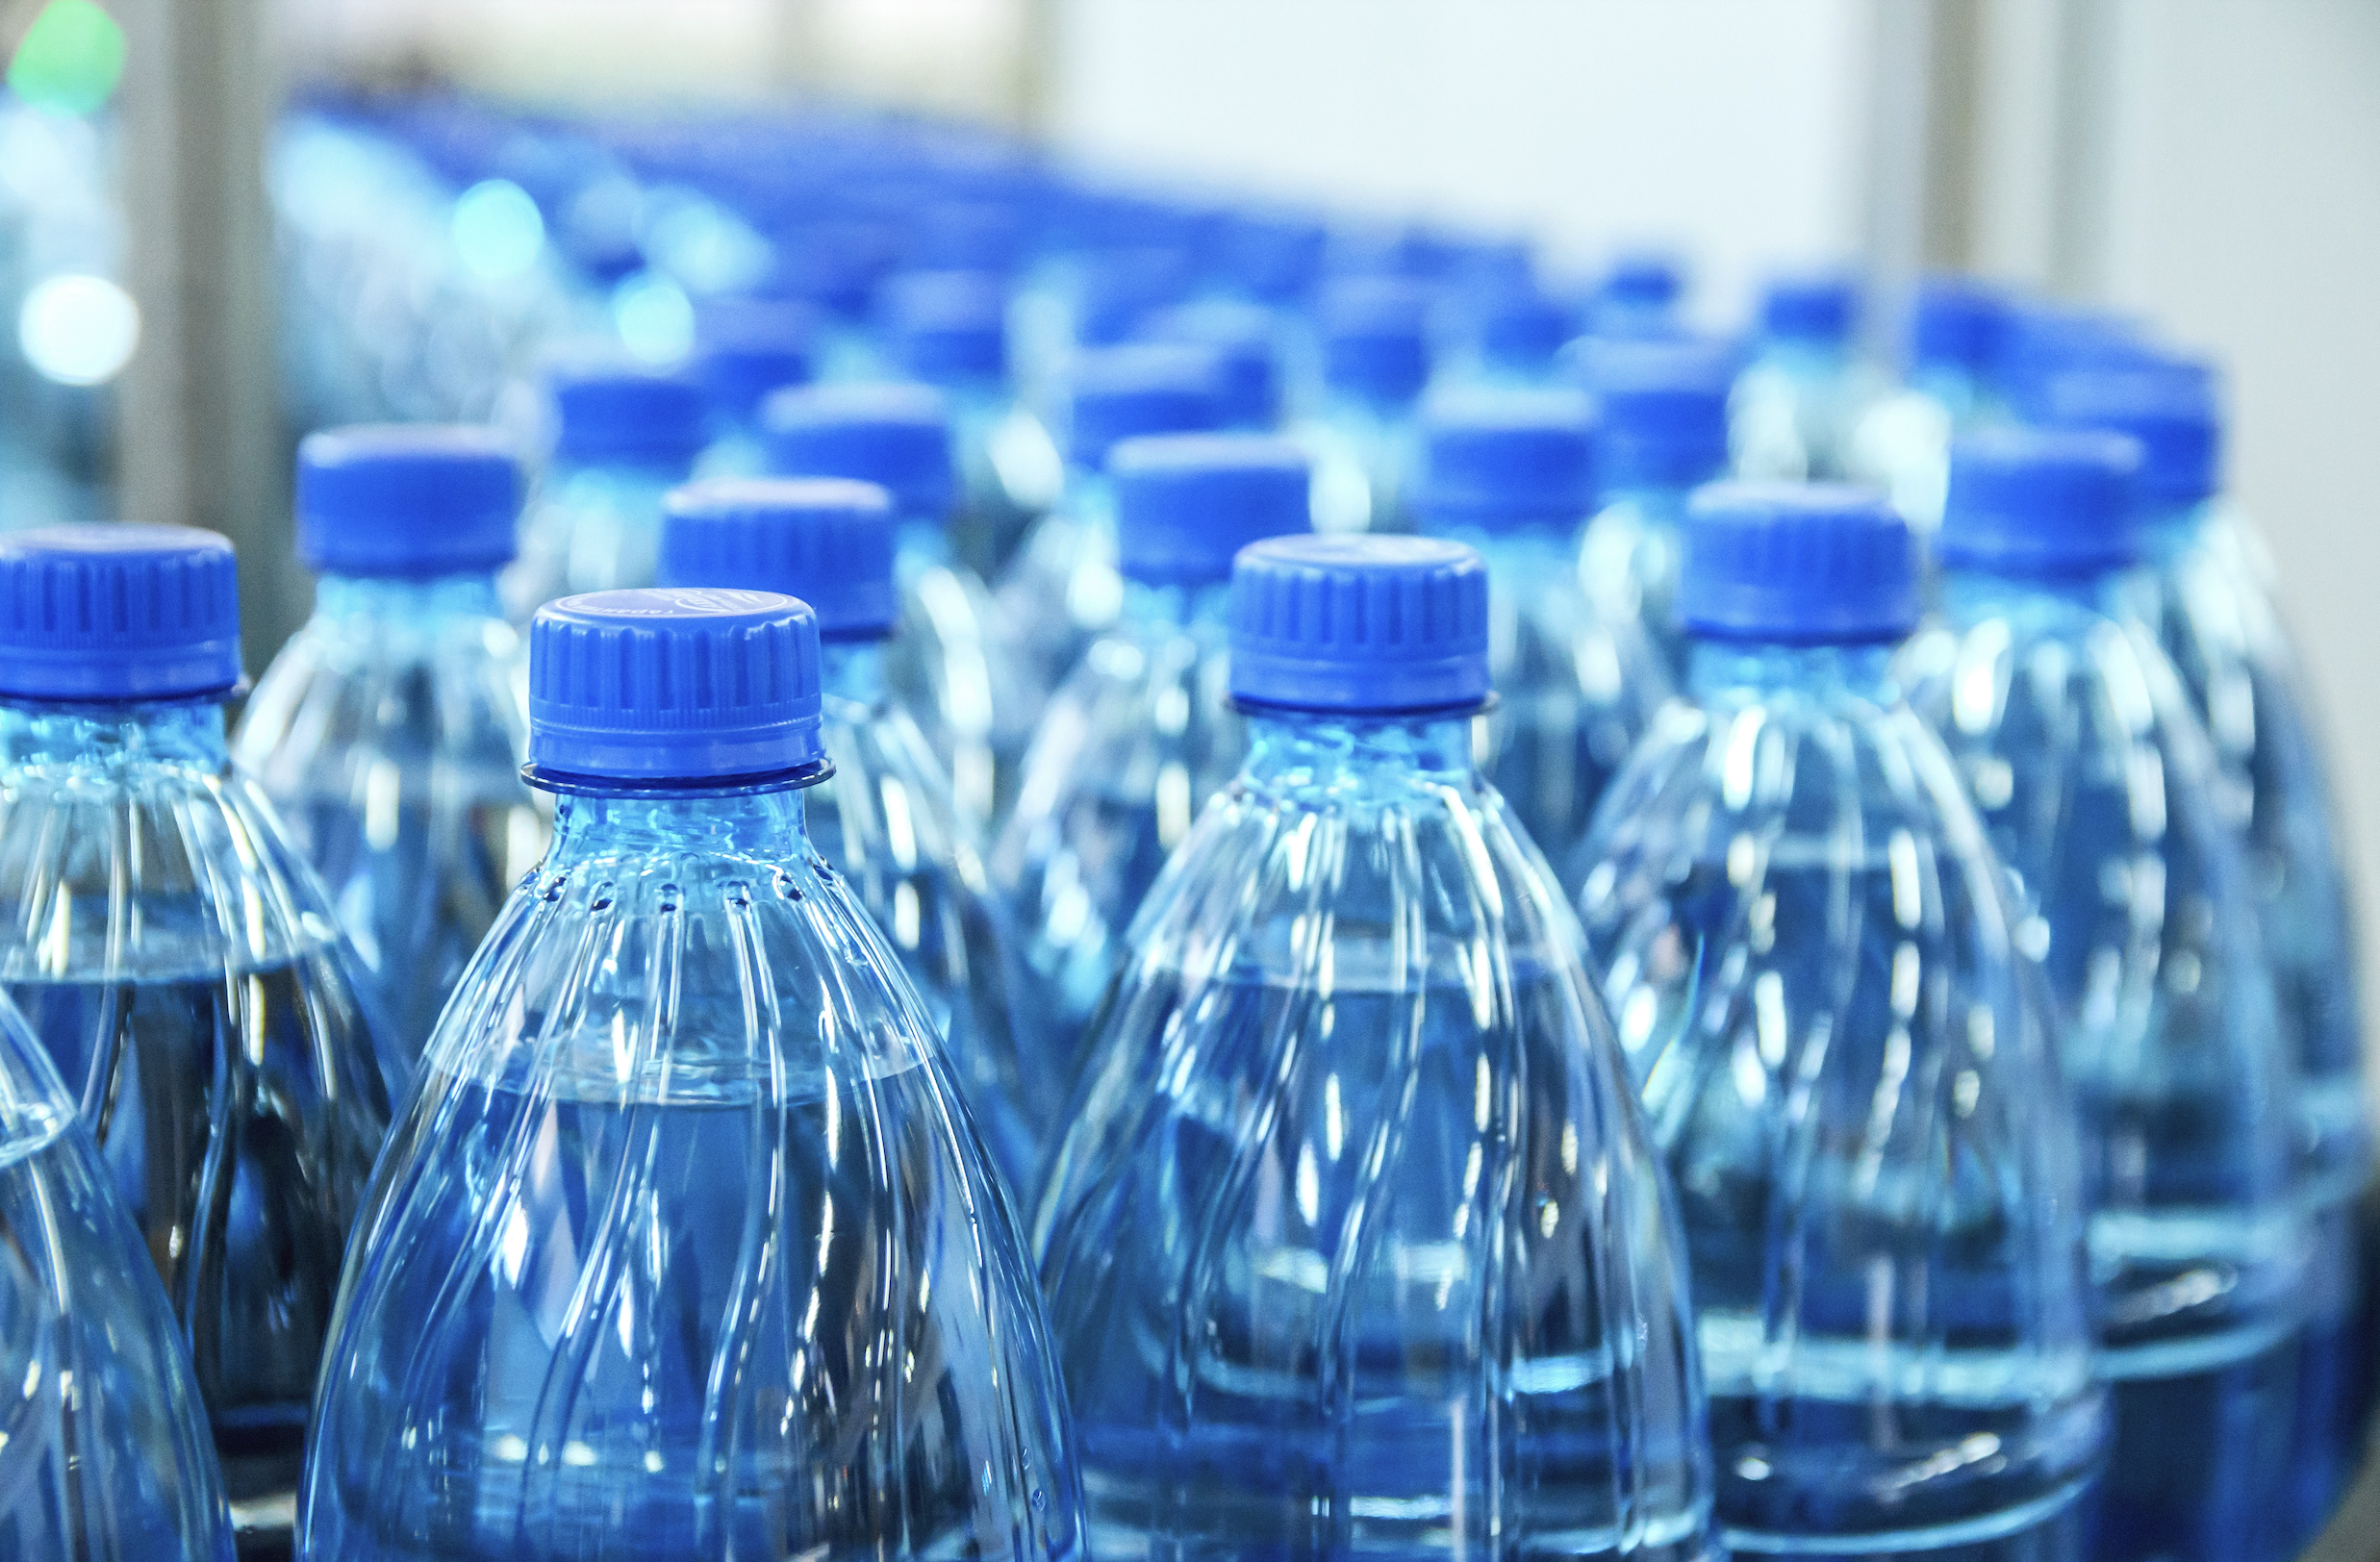     Mise à disposition de bouteilles d’eau dans les communes en rupture d’alimentation

